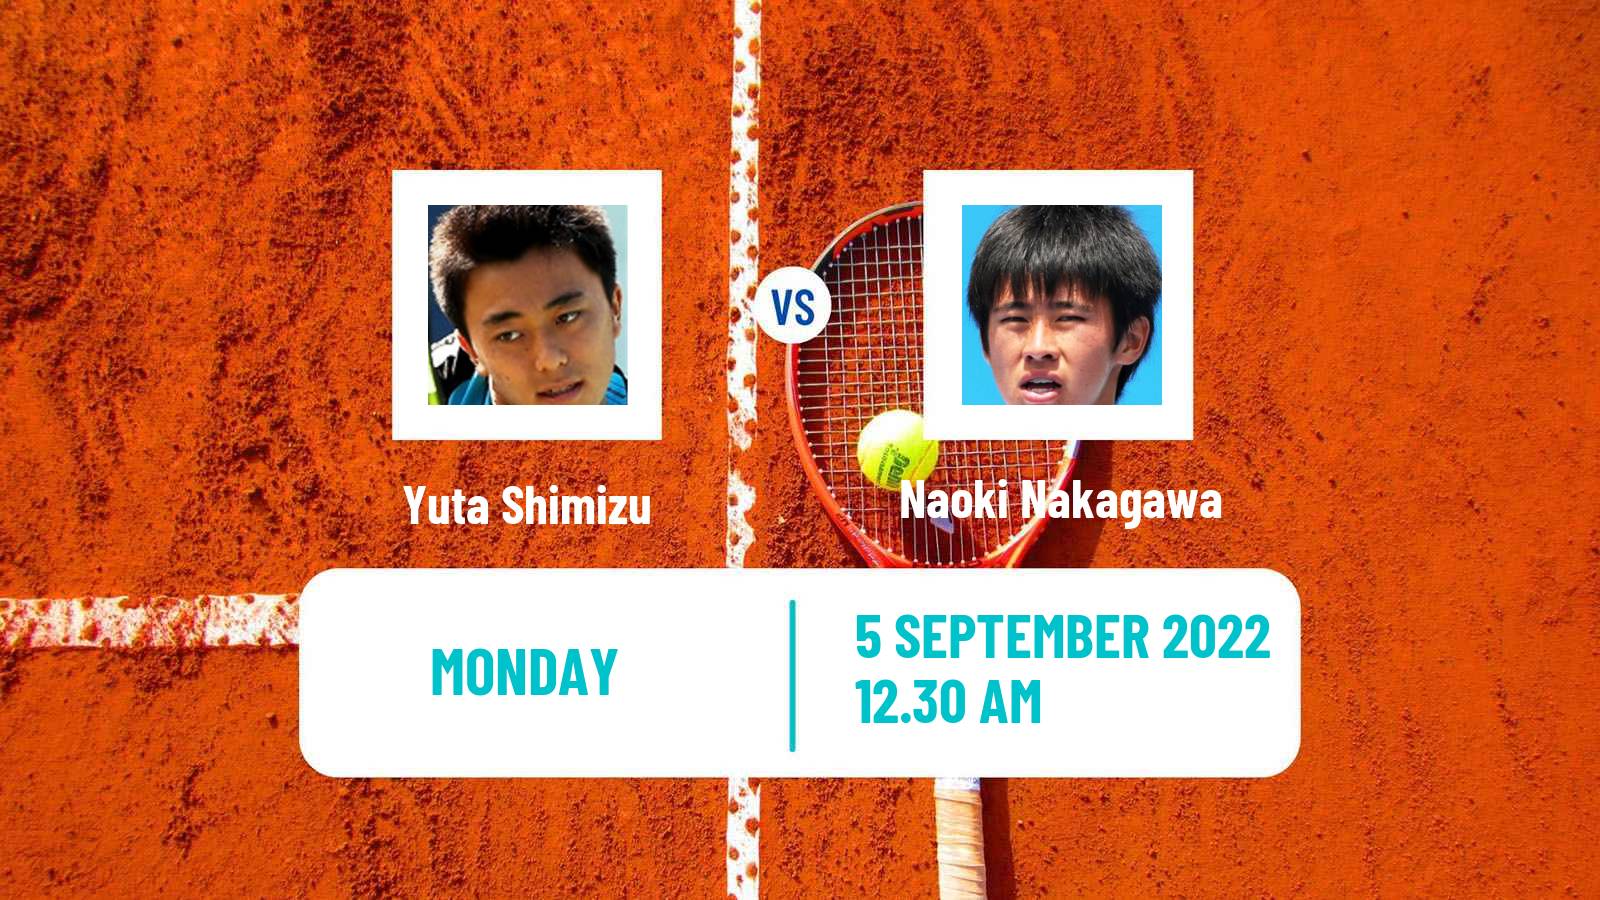 Tennis ATP Challenger Yuta Shimizu - Naoki Nakagawa